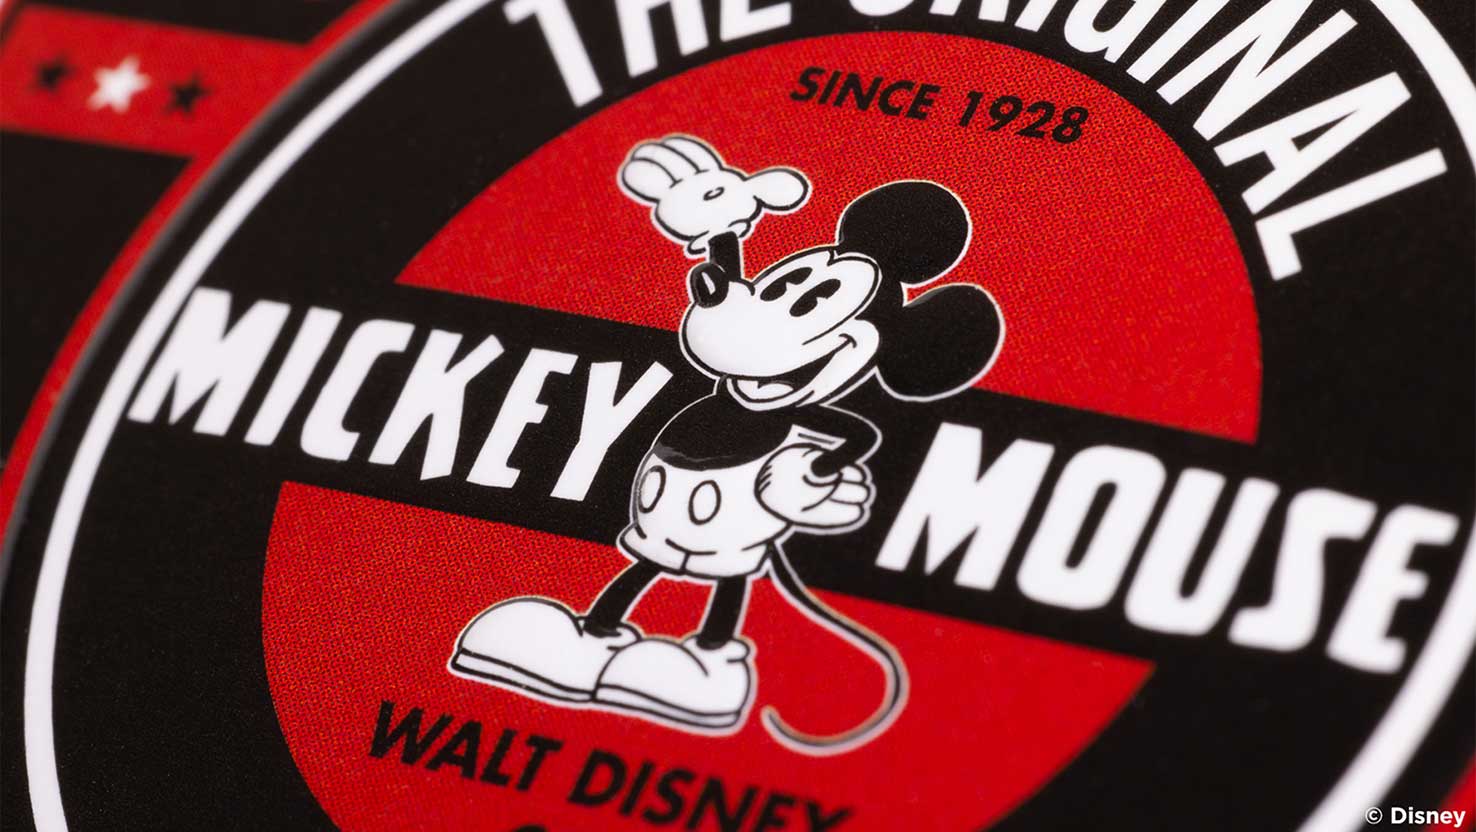 Winkende in Schrift eingerahmte Mickey Mouse auf rotem Untergrund. Mickey Maus, Bicycle Spielkarten